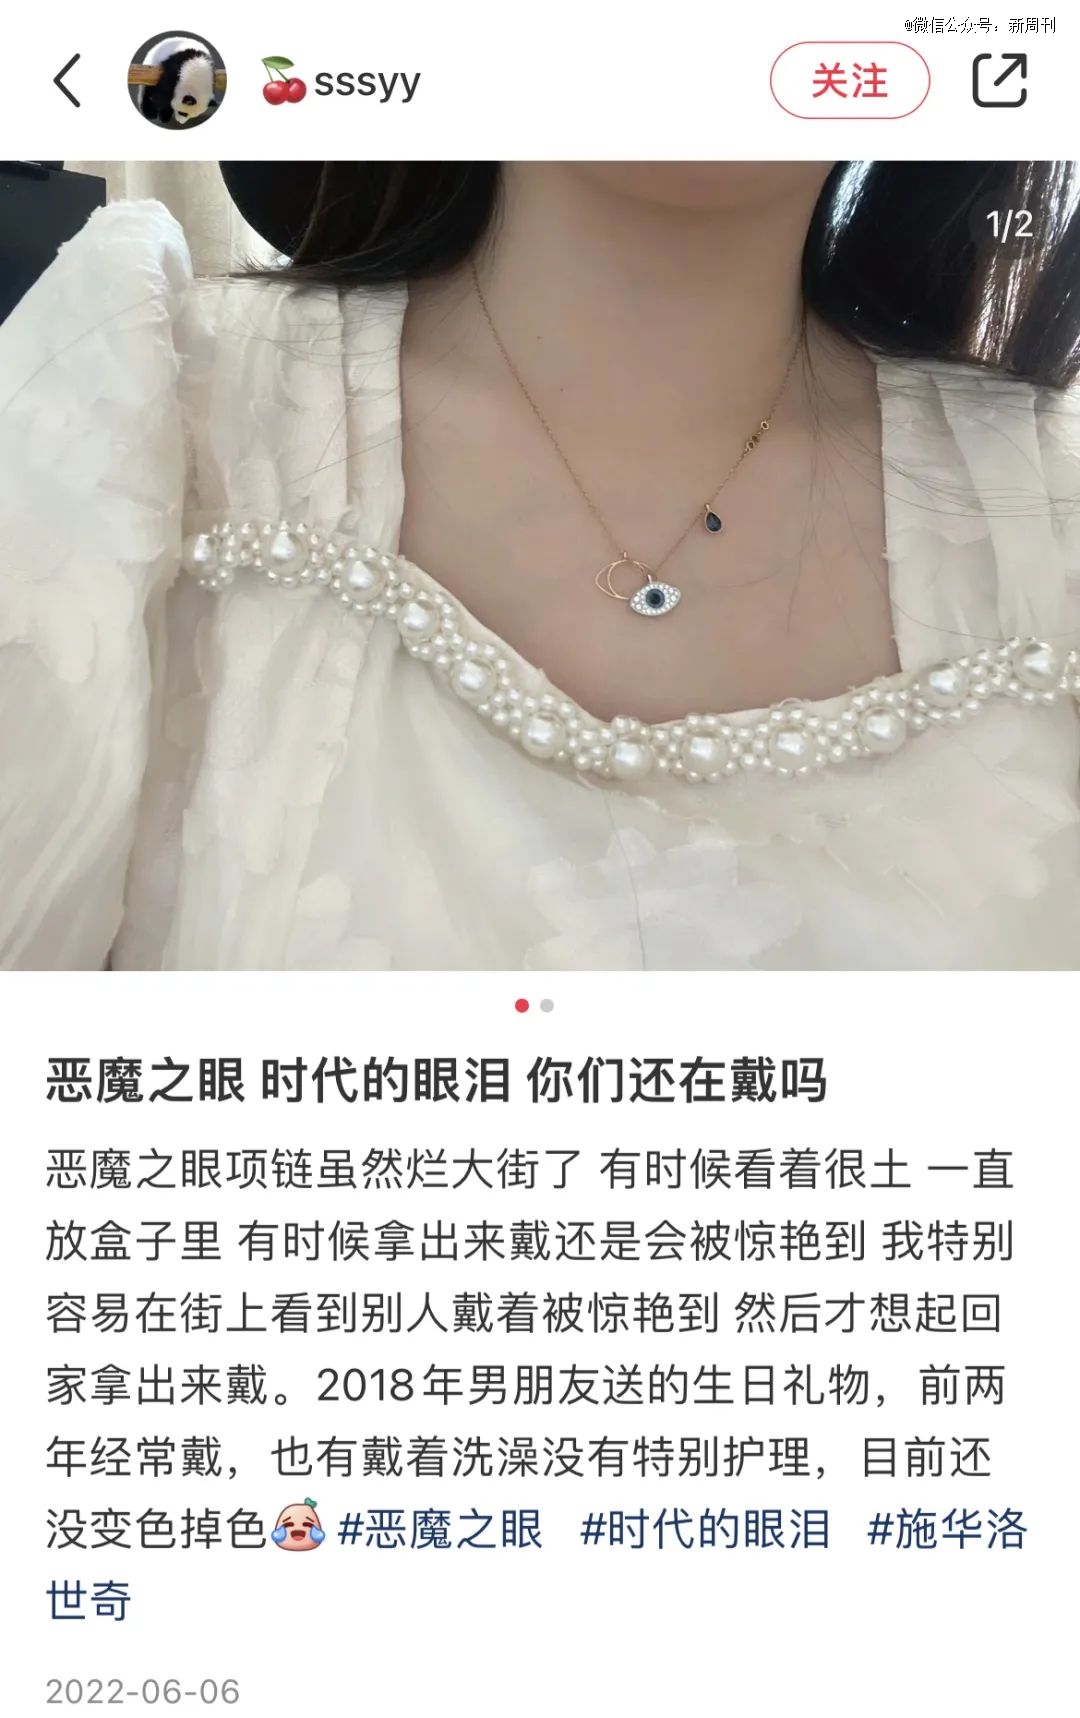 中国女孩重新捧红这珠宝，但没人为了爱情